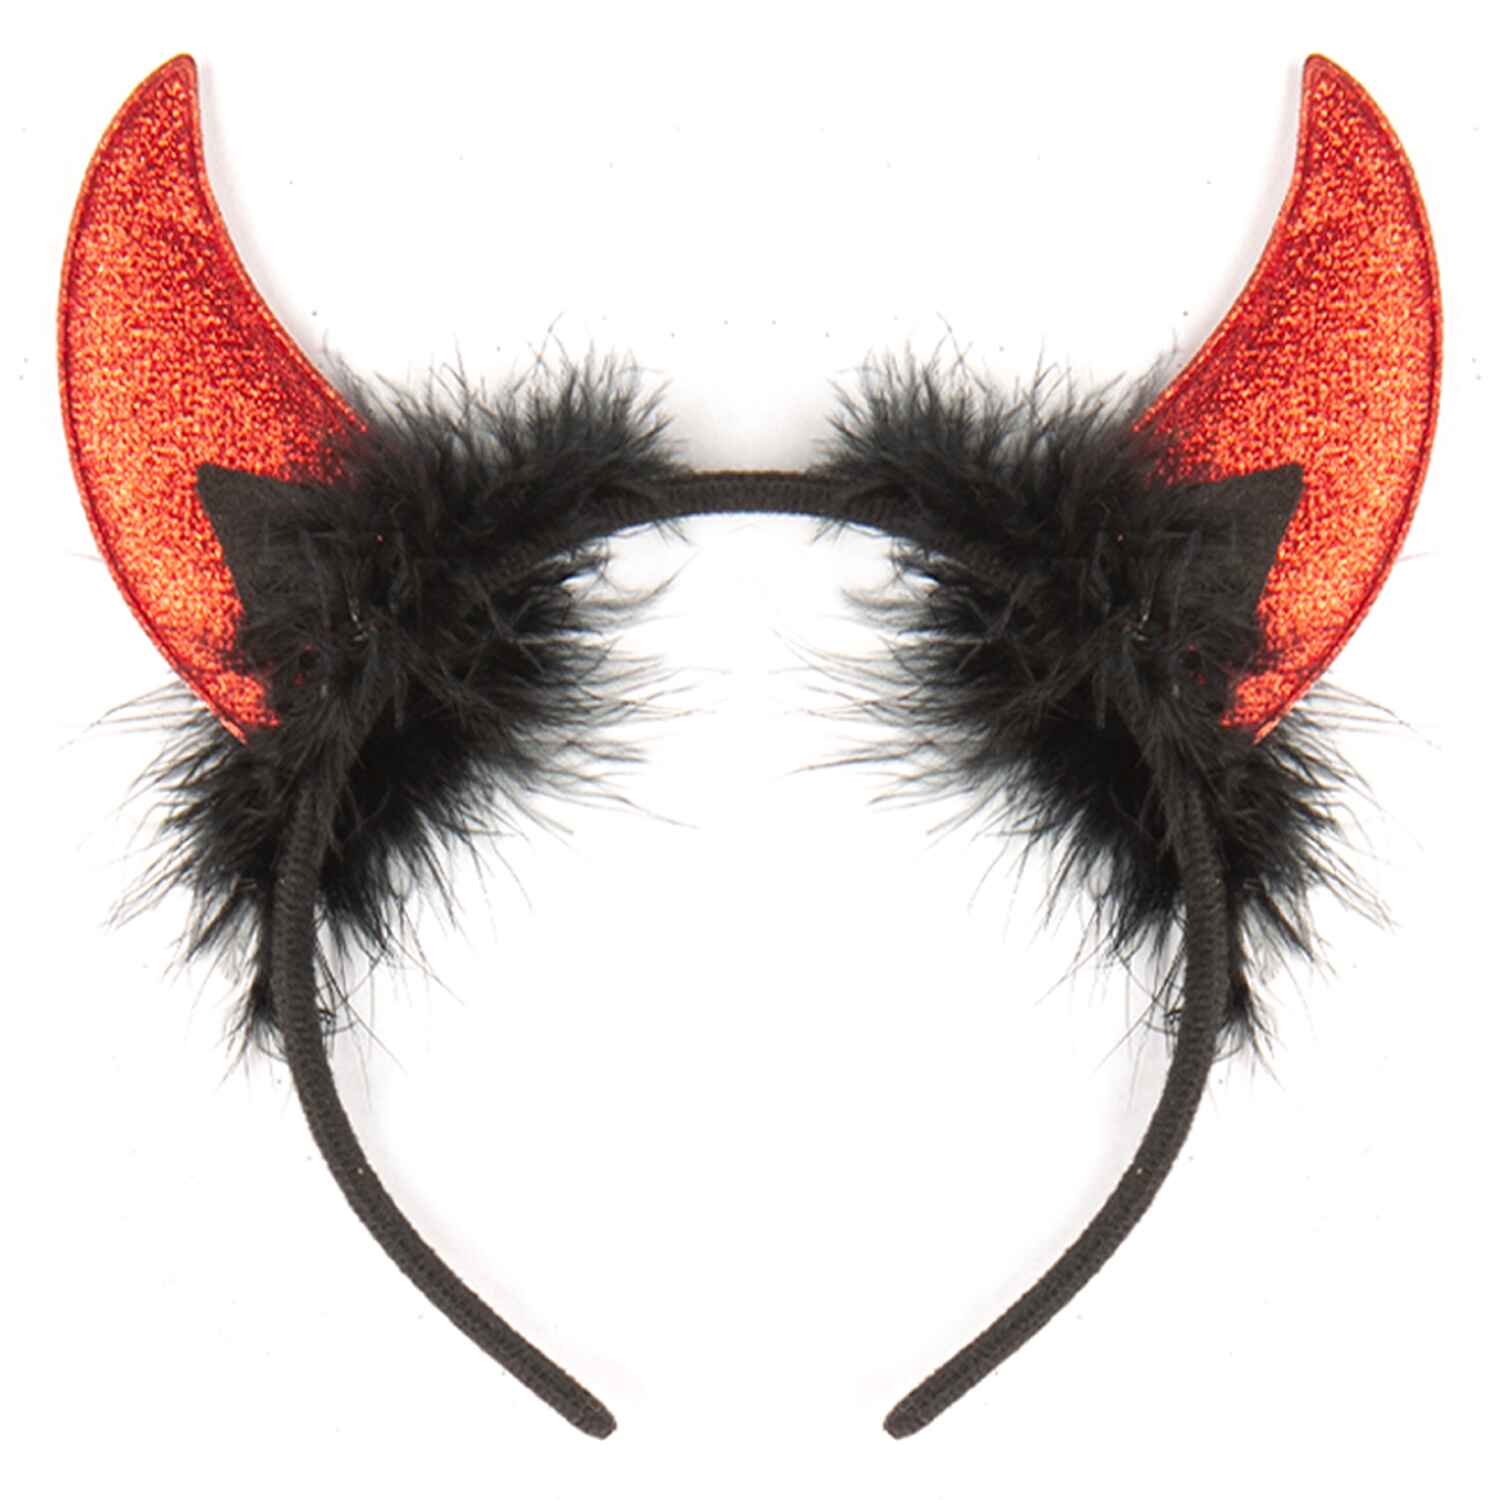 red devil horns men sparkly devil horns black red devil ear costume cute girls devil horns headband